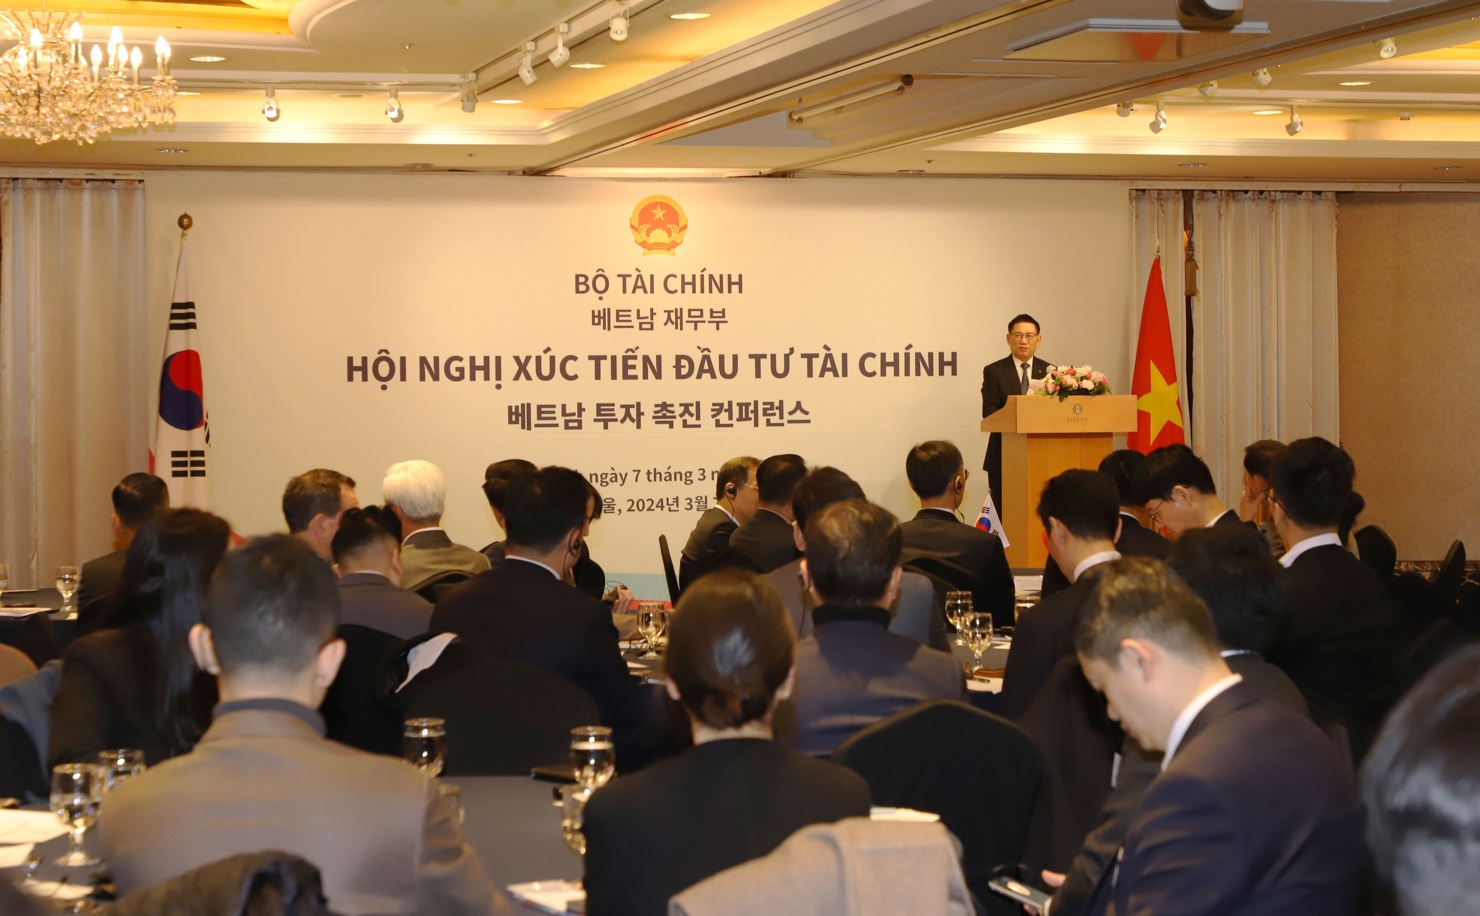 Bộ trưởng Bộ Tài chính Hồ Đức Phớc chủ trì Hội nghị Xúc tiến Đầu tư tại Hàn Quốc với chủ đề “Việt Nam – Điểm đến đầu tư”.